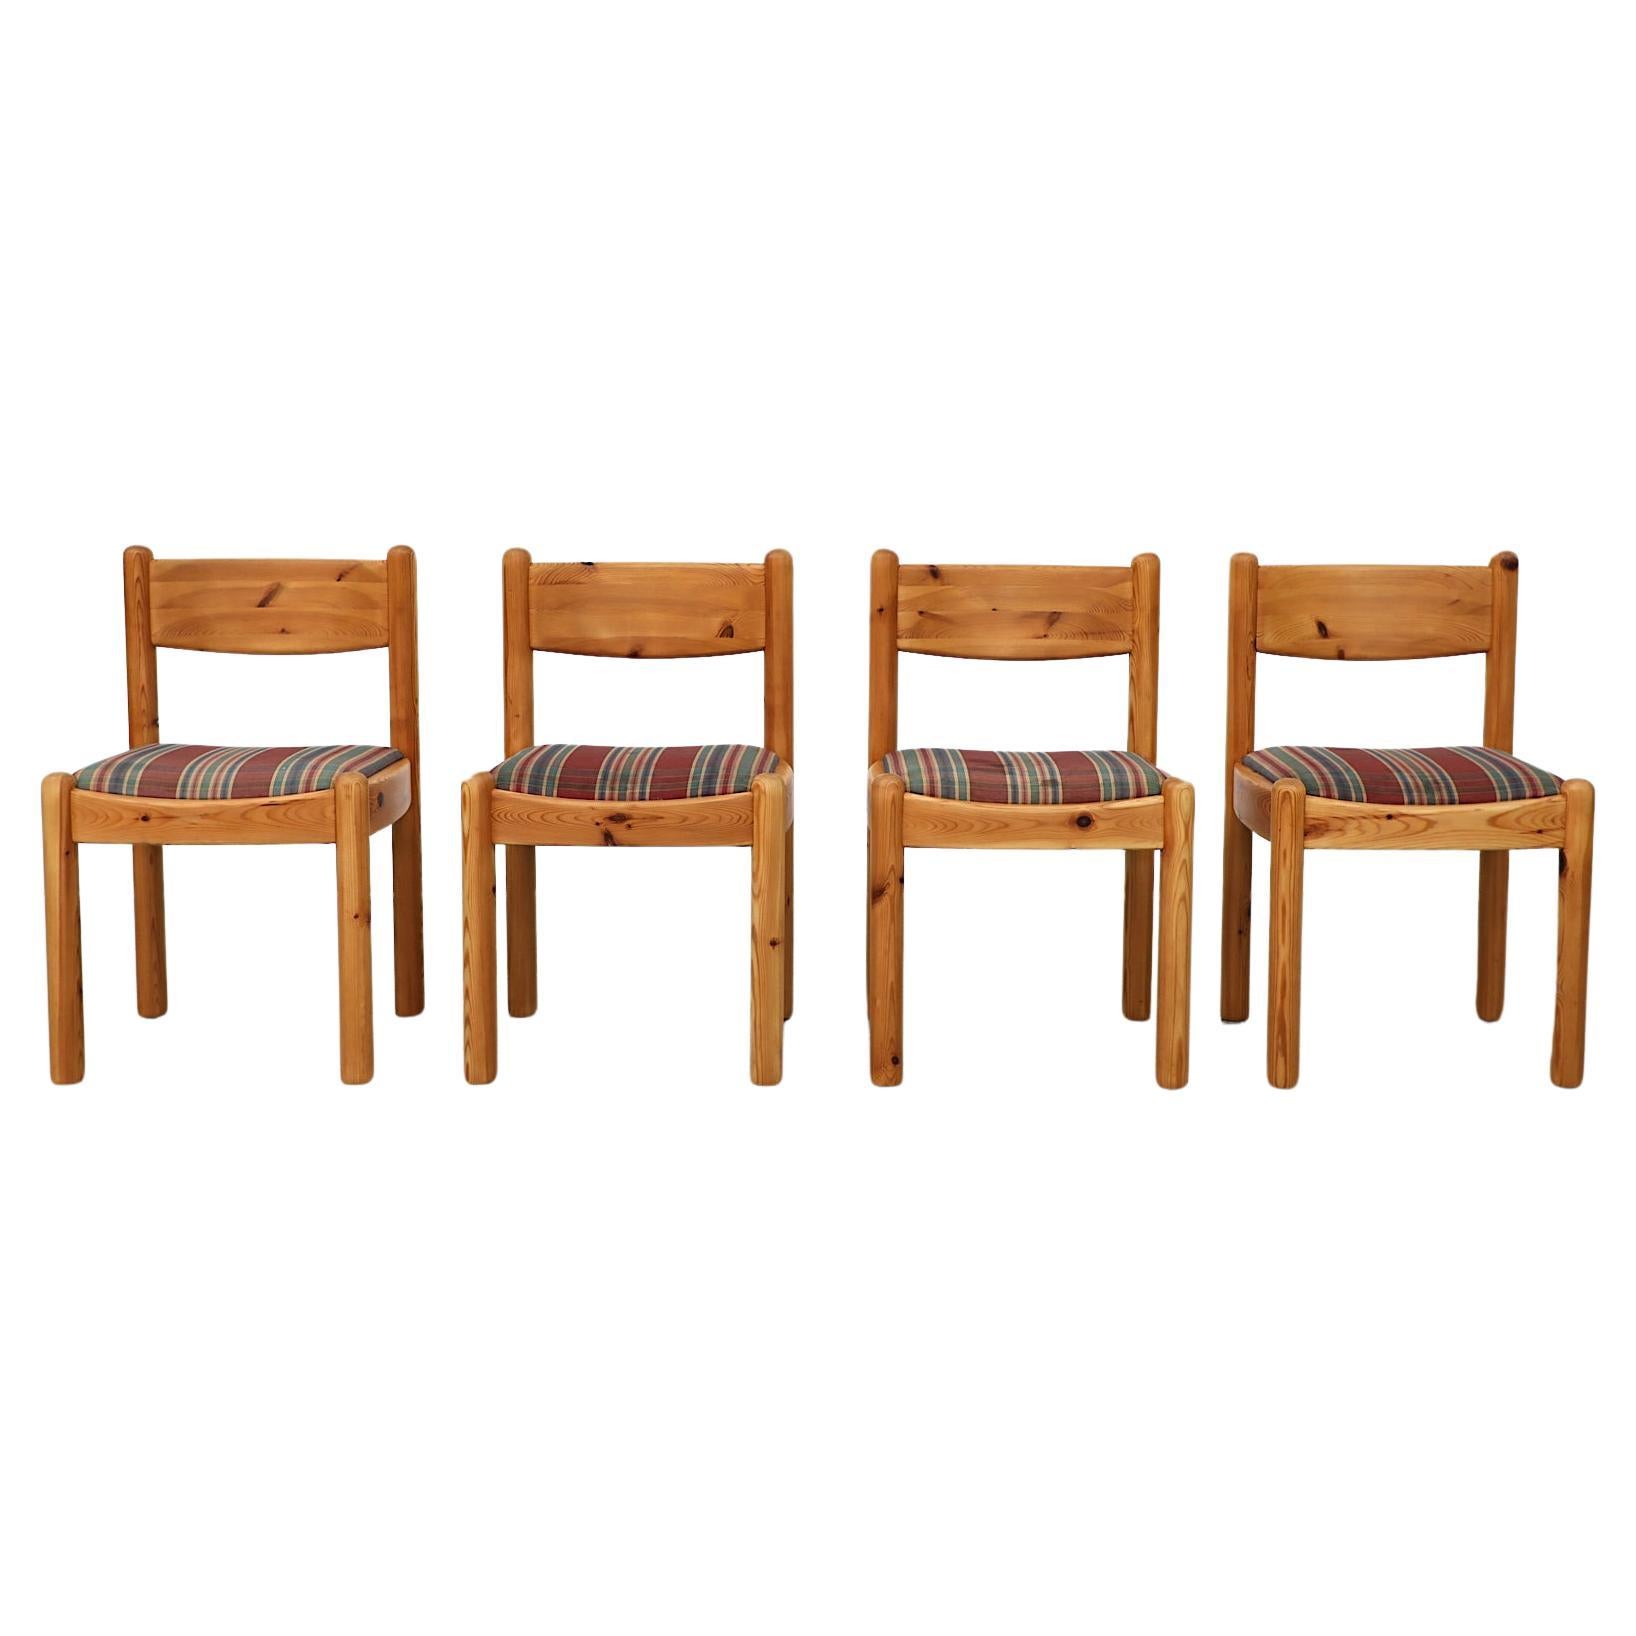 Satz von 4 Esszimmerstühlen aus Kiefernholz im Ate van Apeldoorn-Stil mit karierten Sitzen